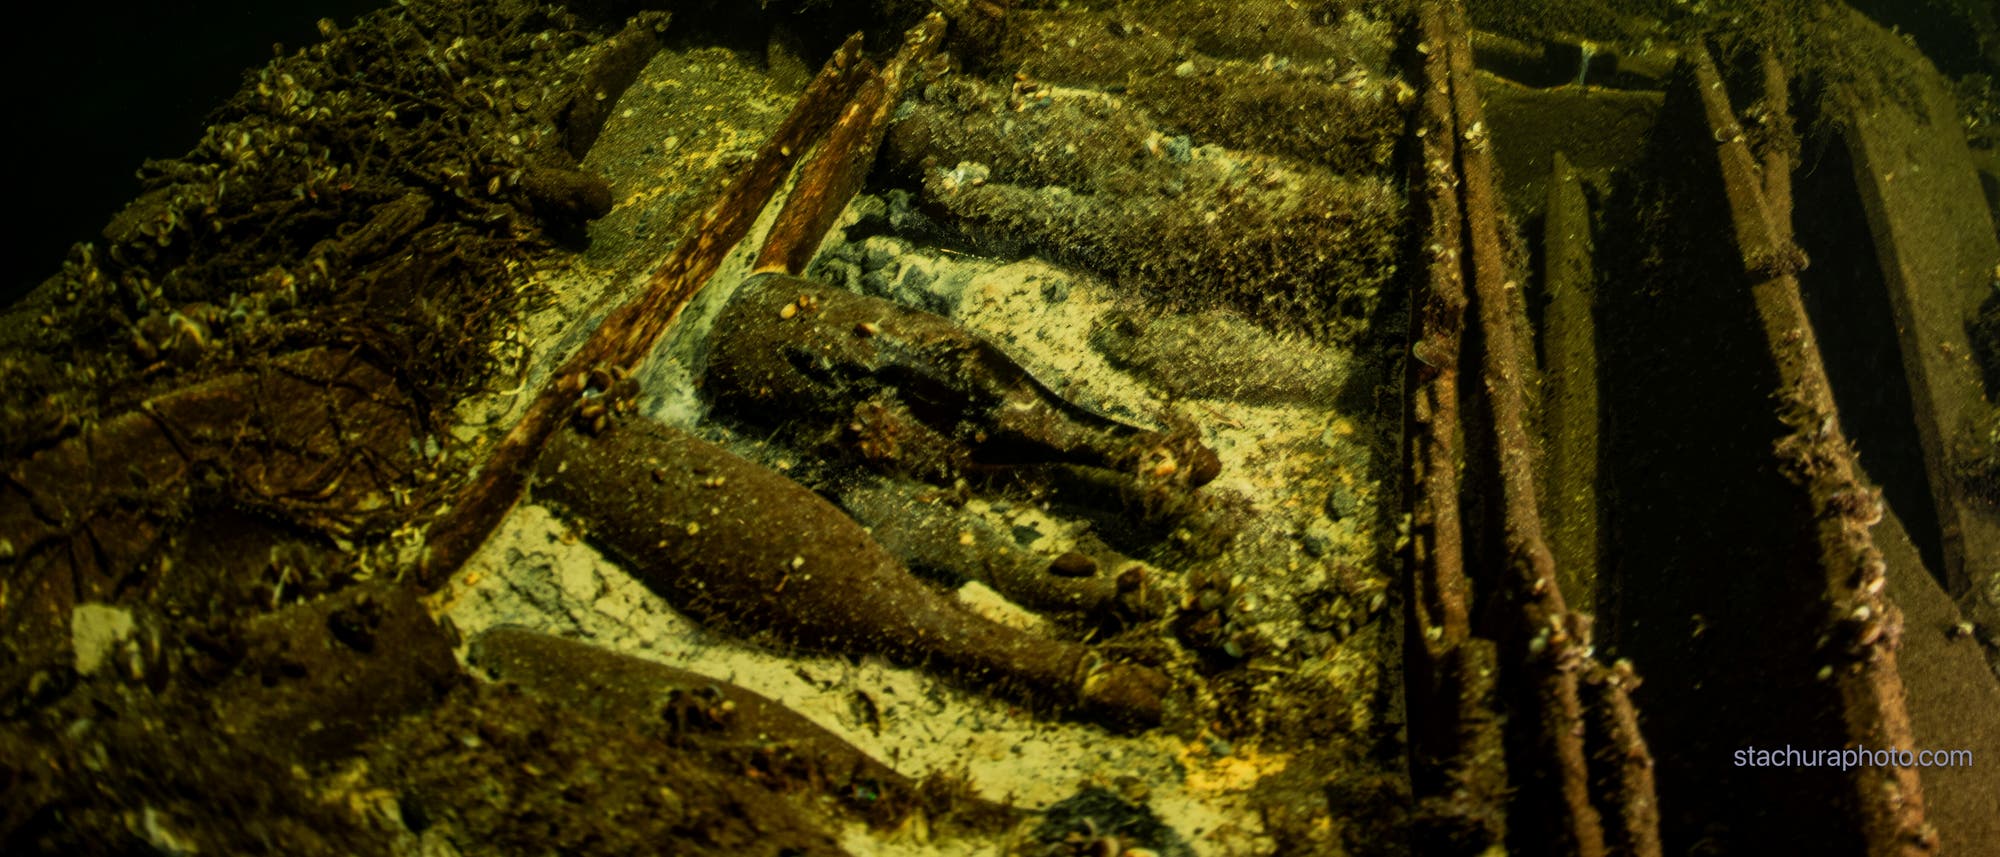 Alte Flaschen in einem Schiffswrack auf dem Grund der Ostsee